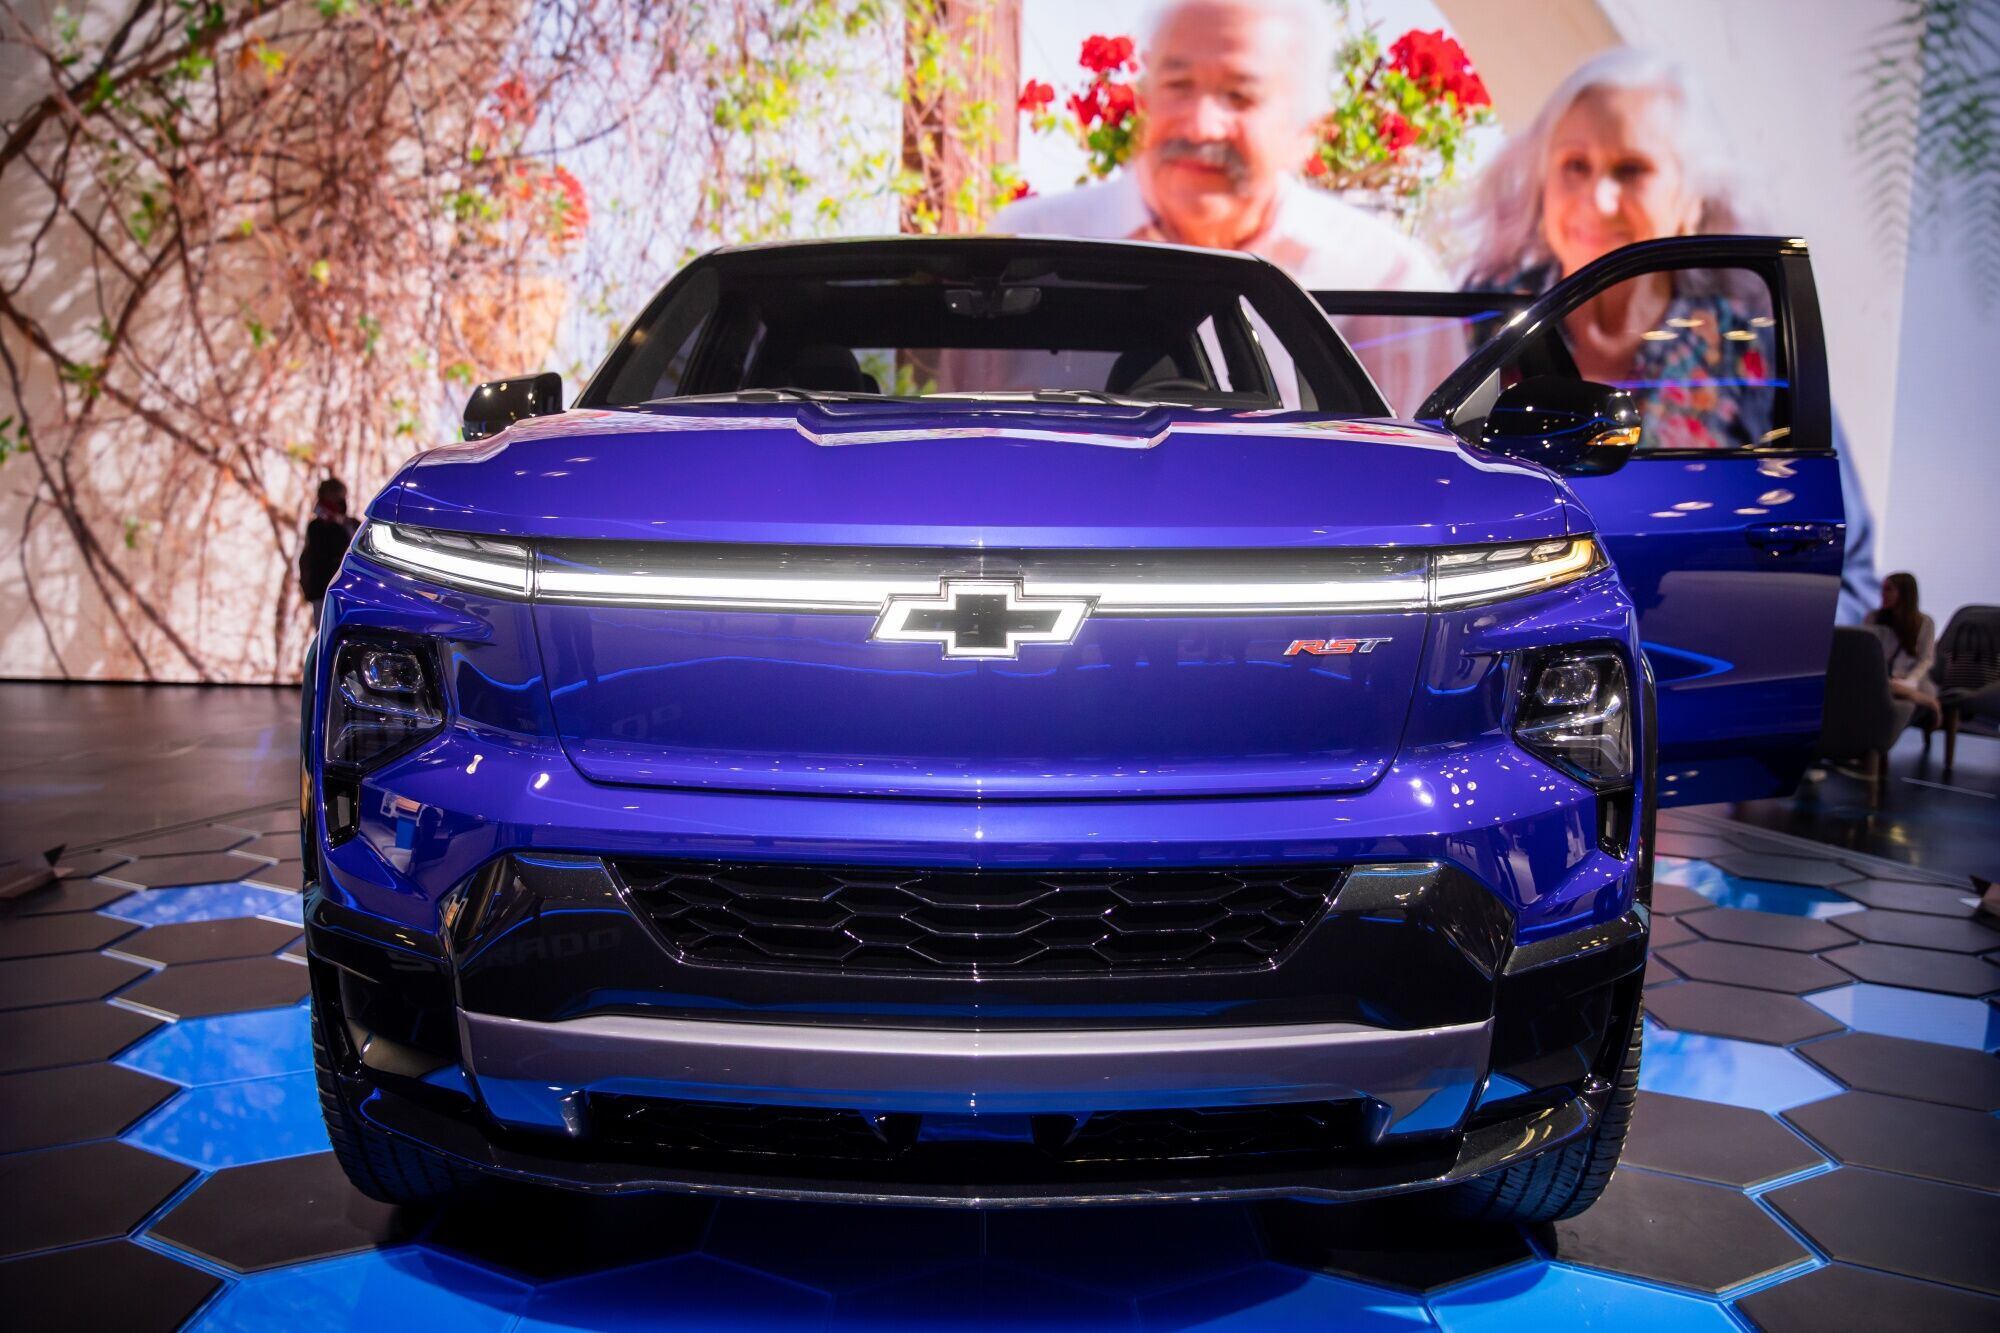 La pick-up Chevrolet Silverado EV será uno de los productos grandes de GM, que parece decidida a dejar de producir pequeños modelos en su era eléctrica. Photographer: Michael Nagle/Bloomberg